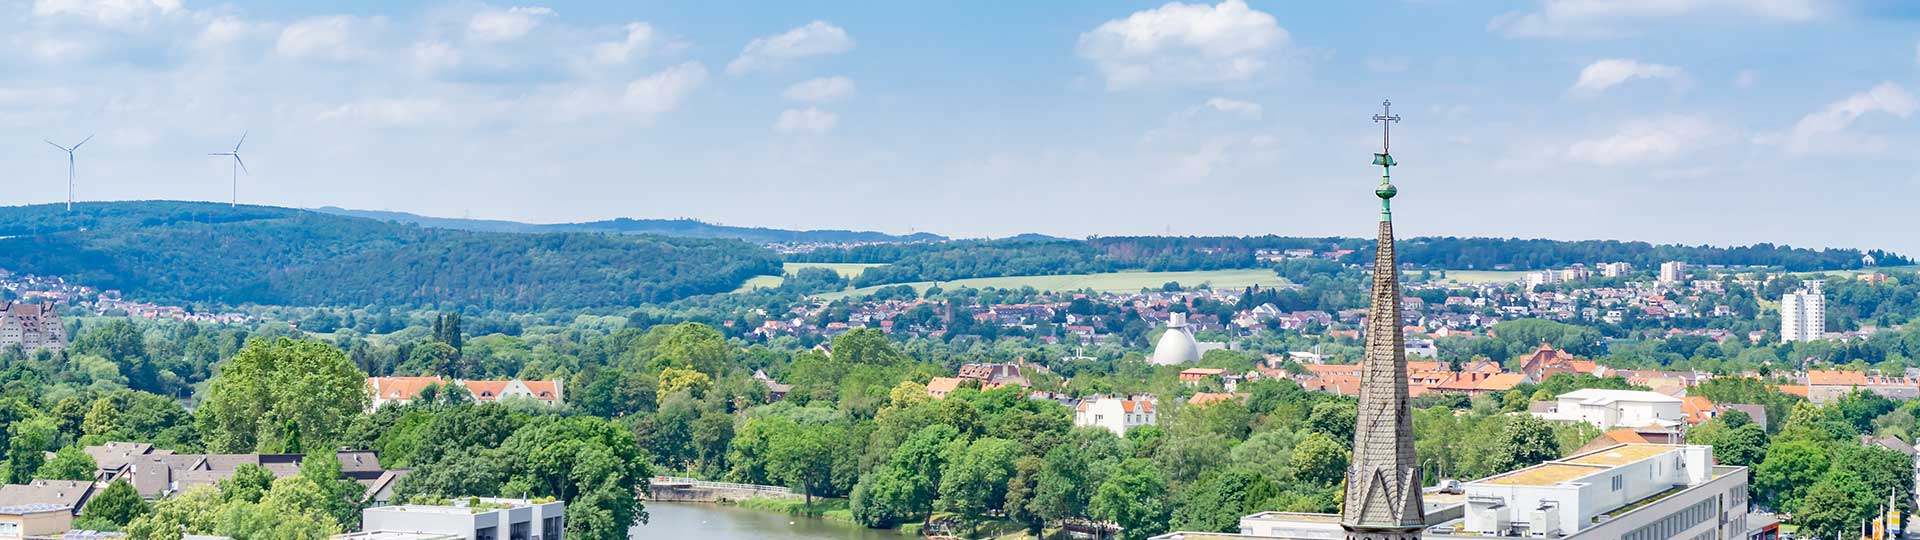 Stadt Kassel